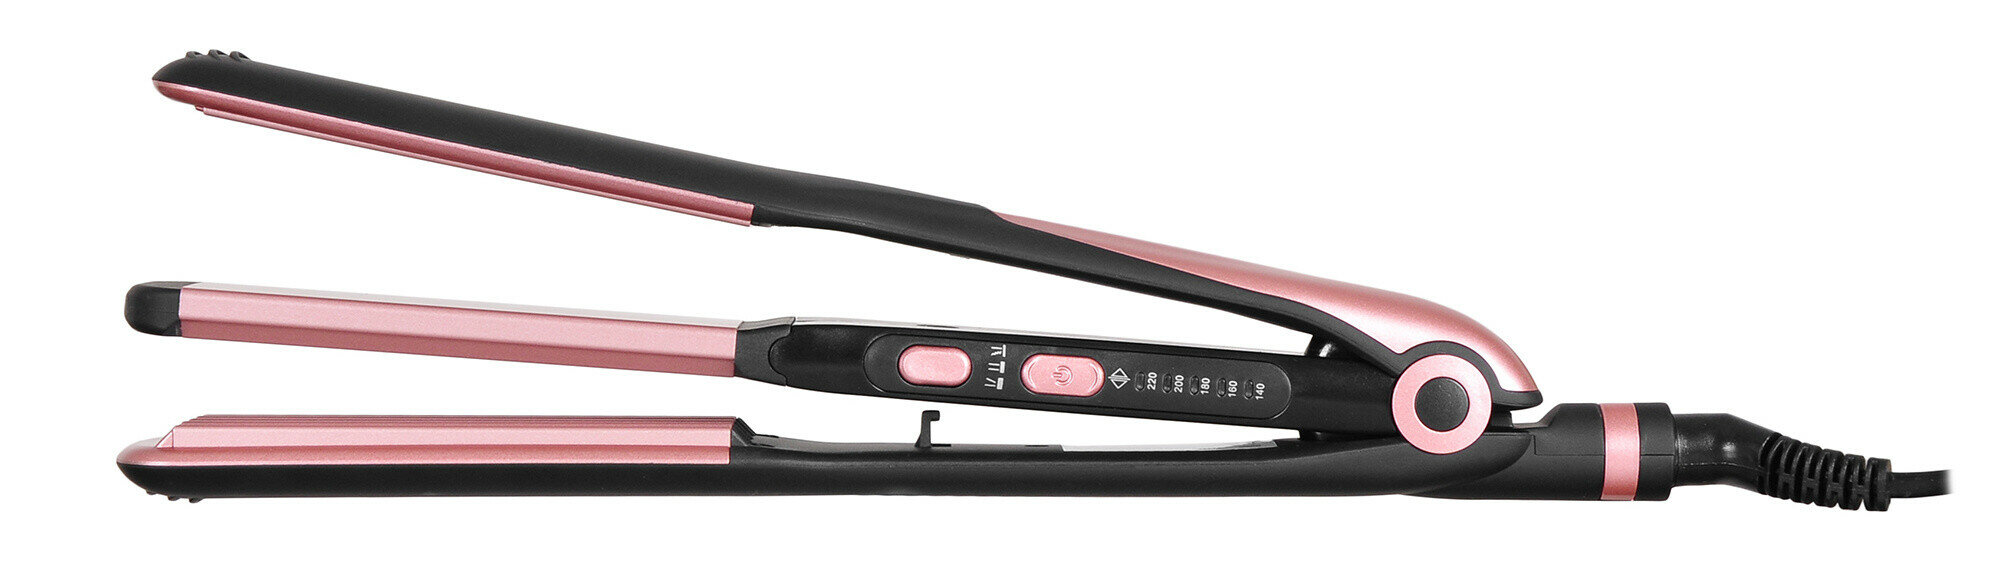 Прибор для укладки волос Starwind SHC 7050 черный/розовое золото